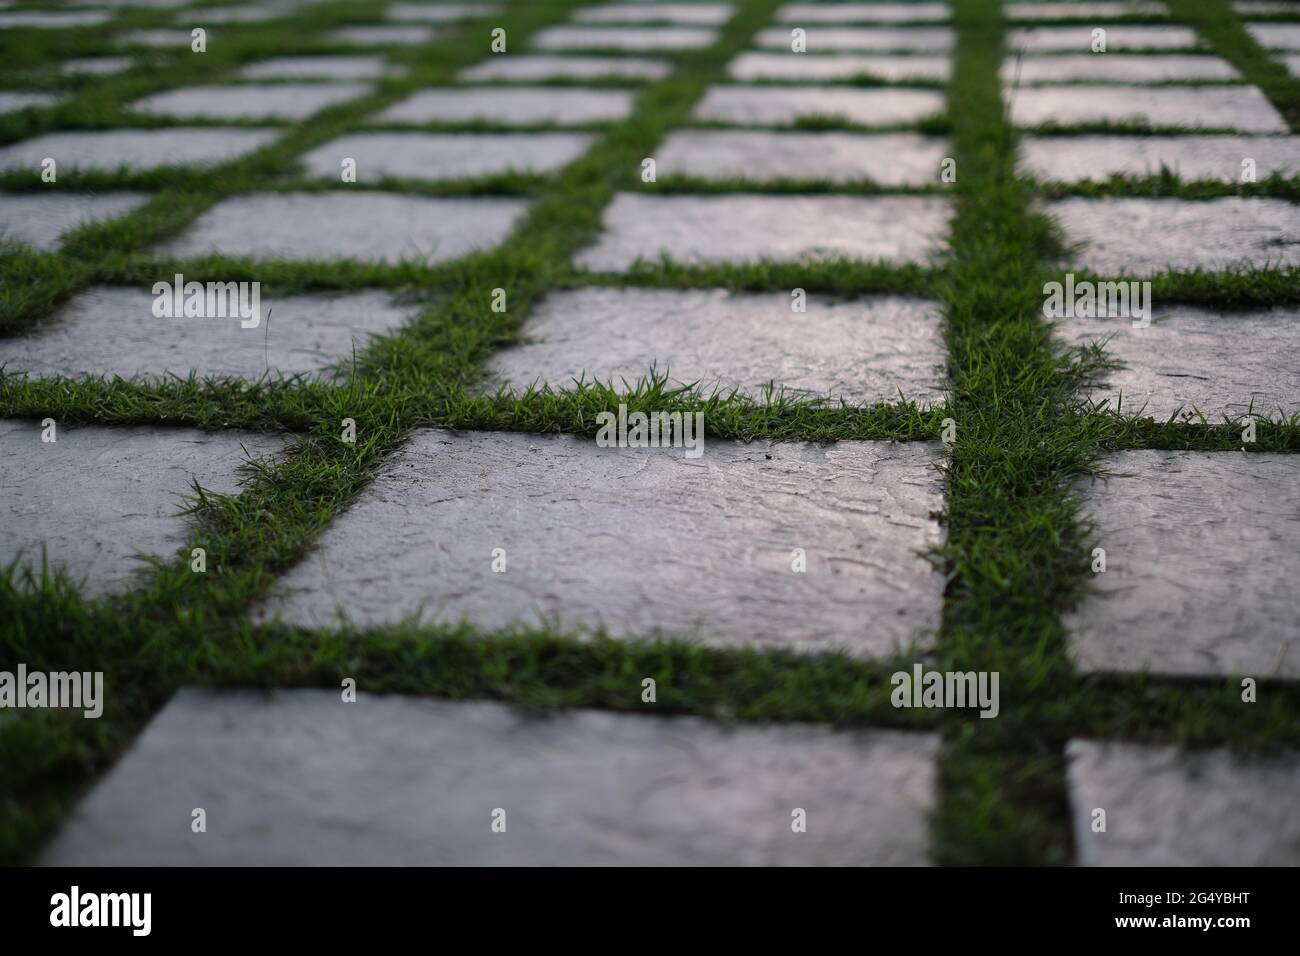 Las baldosas de concreto, dispuestas de forma ordenada, están inundadas de una hierba fresca Foto de stock